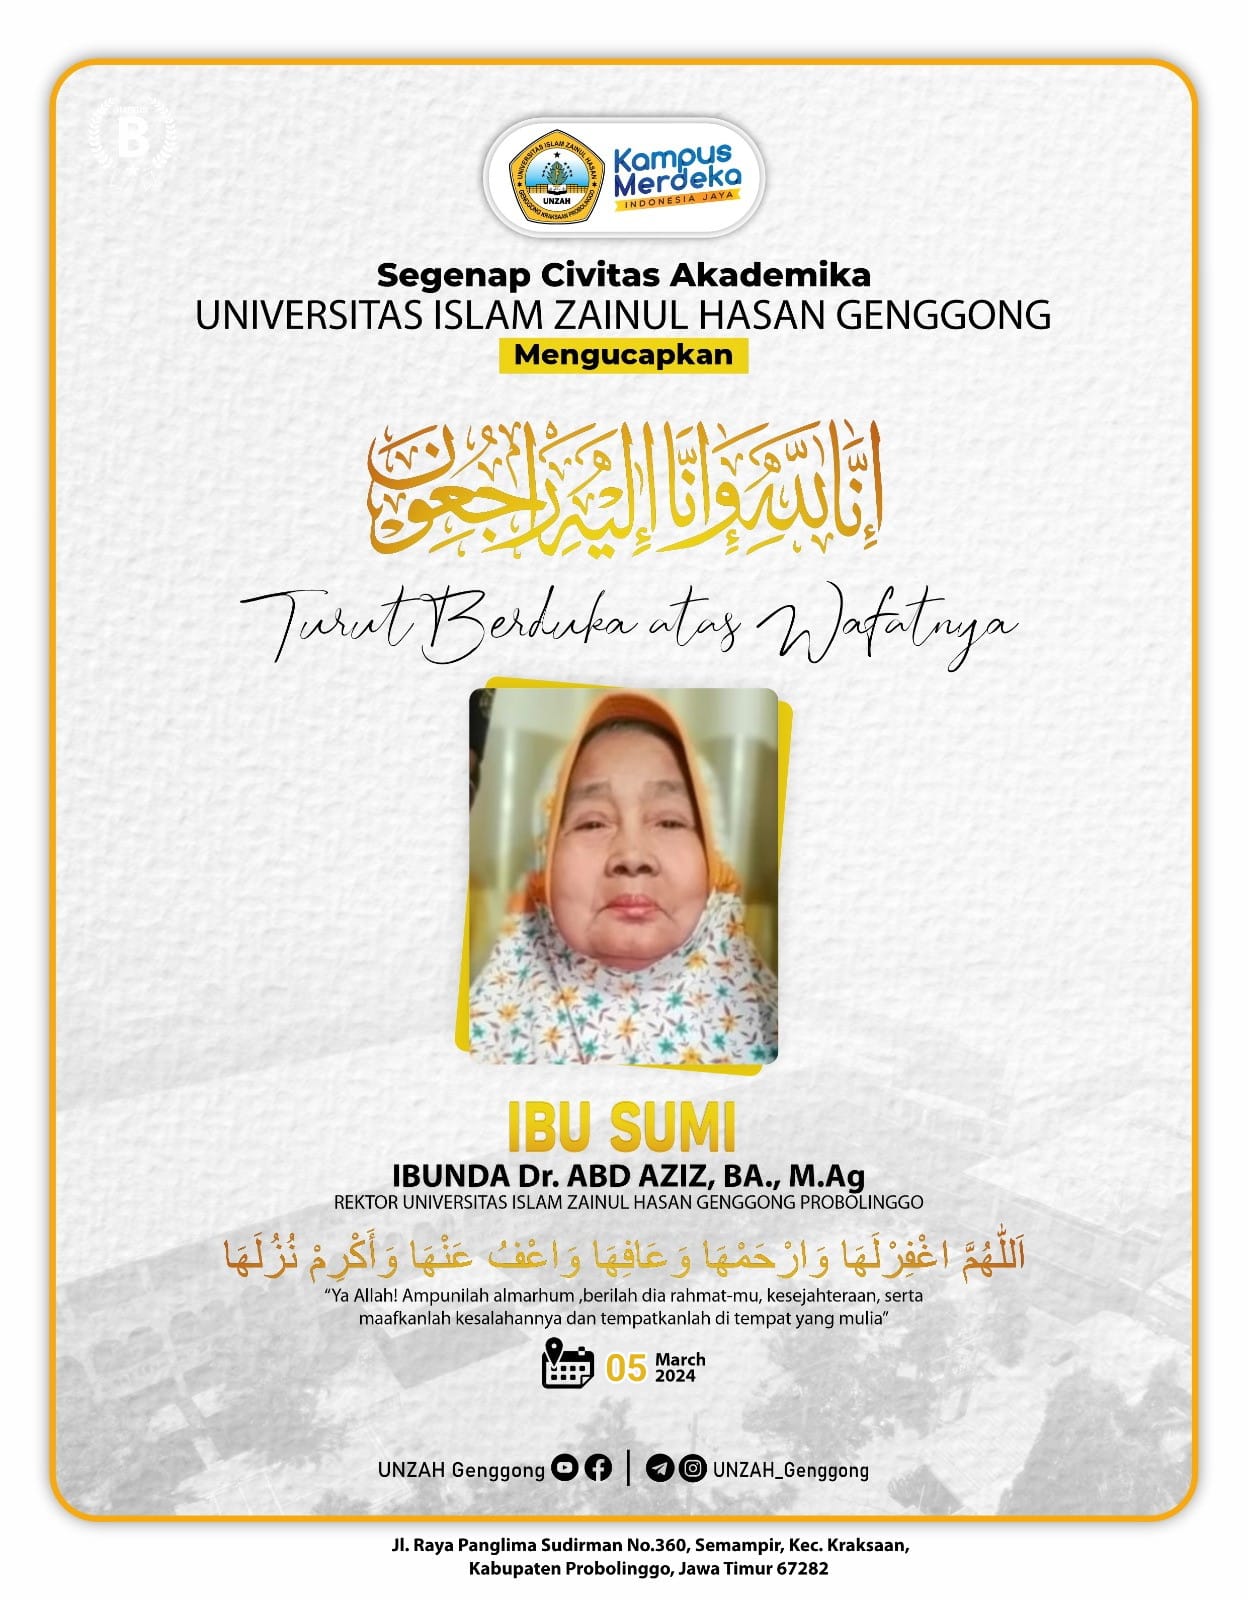 UNZAH Berkabung, Telah Wafat Ibu Sumi (Ibunda dari Rektor Unzah Dr. Abdul Aziz Wahab, BA.,M.Ag)